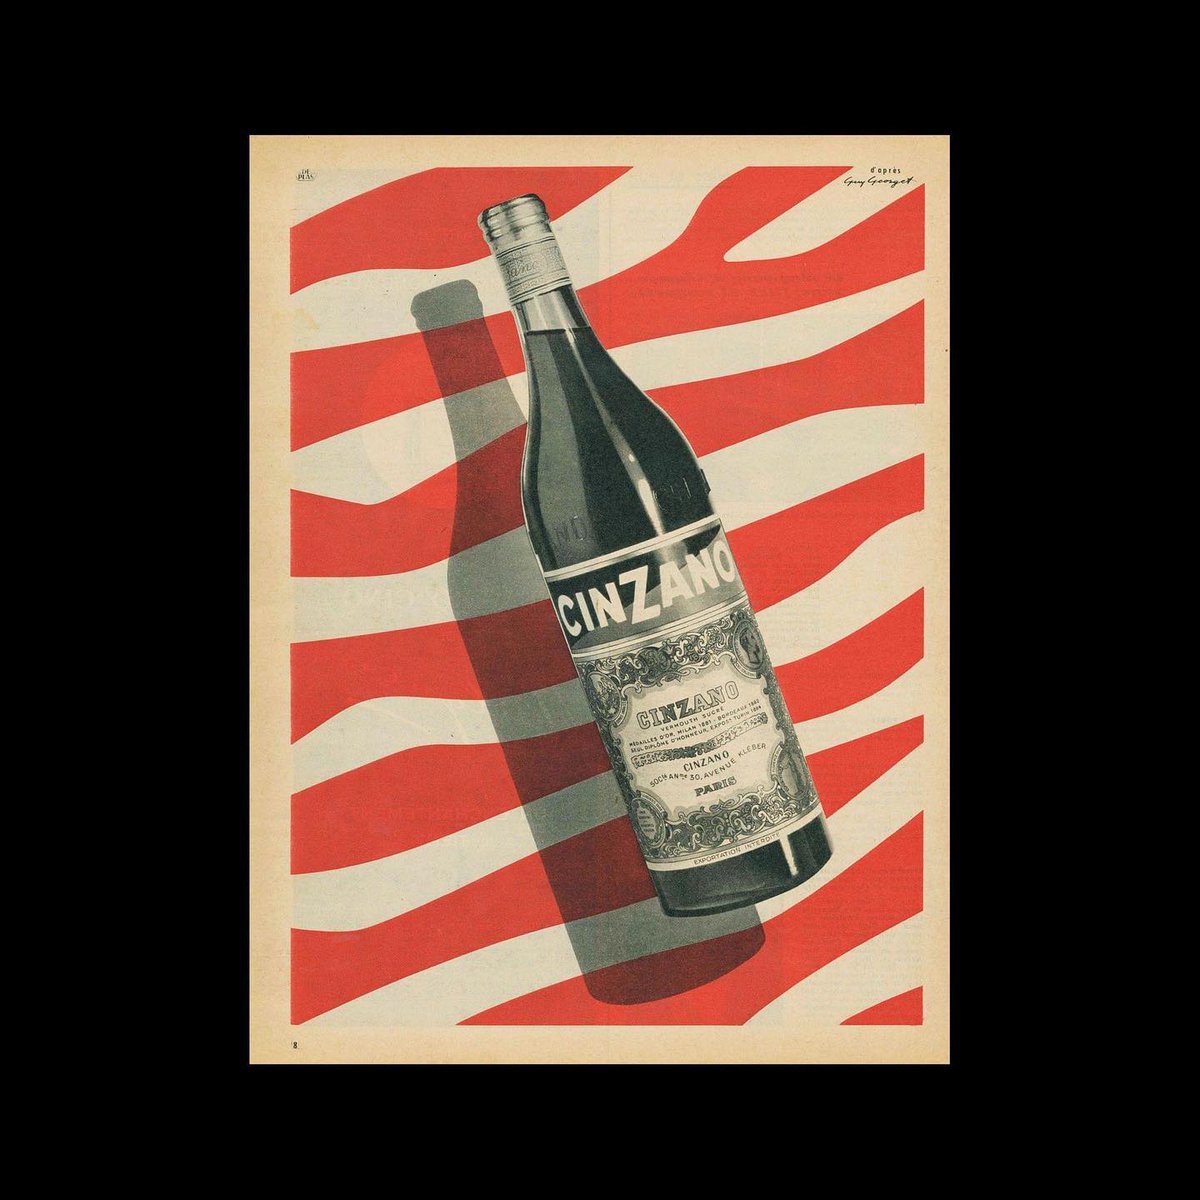 Cinzano, Advertisement, 1955. Design by Guy Georget.
designreviewed.com/artefacts/cinz…
#VintageAdvertising #GuyGeorget #Cinzano